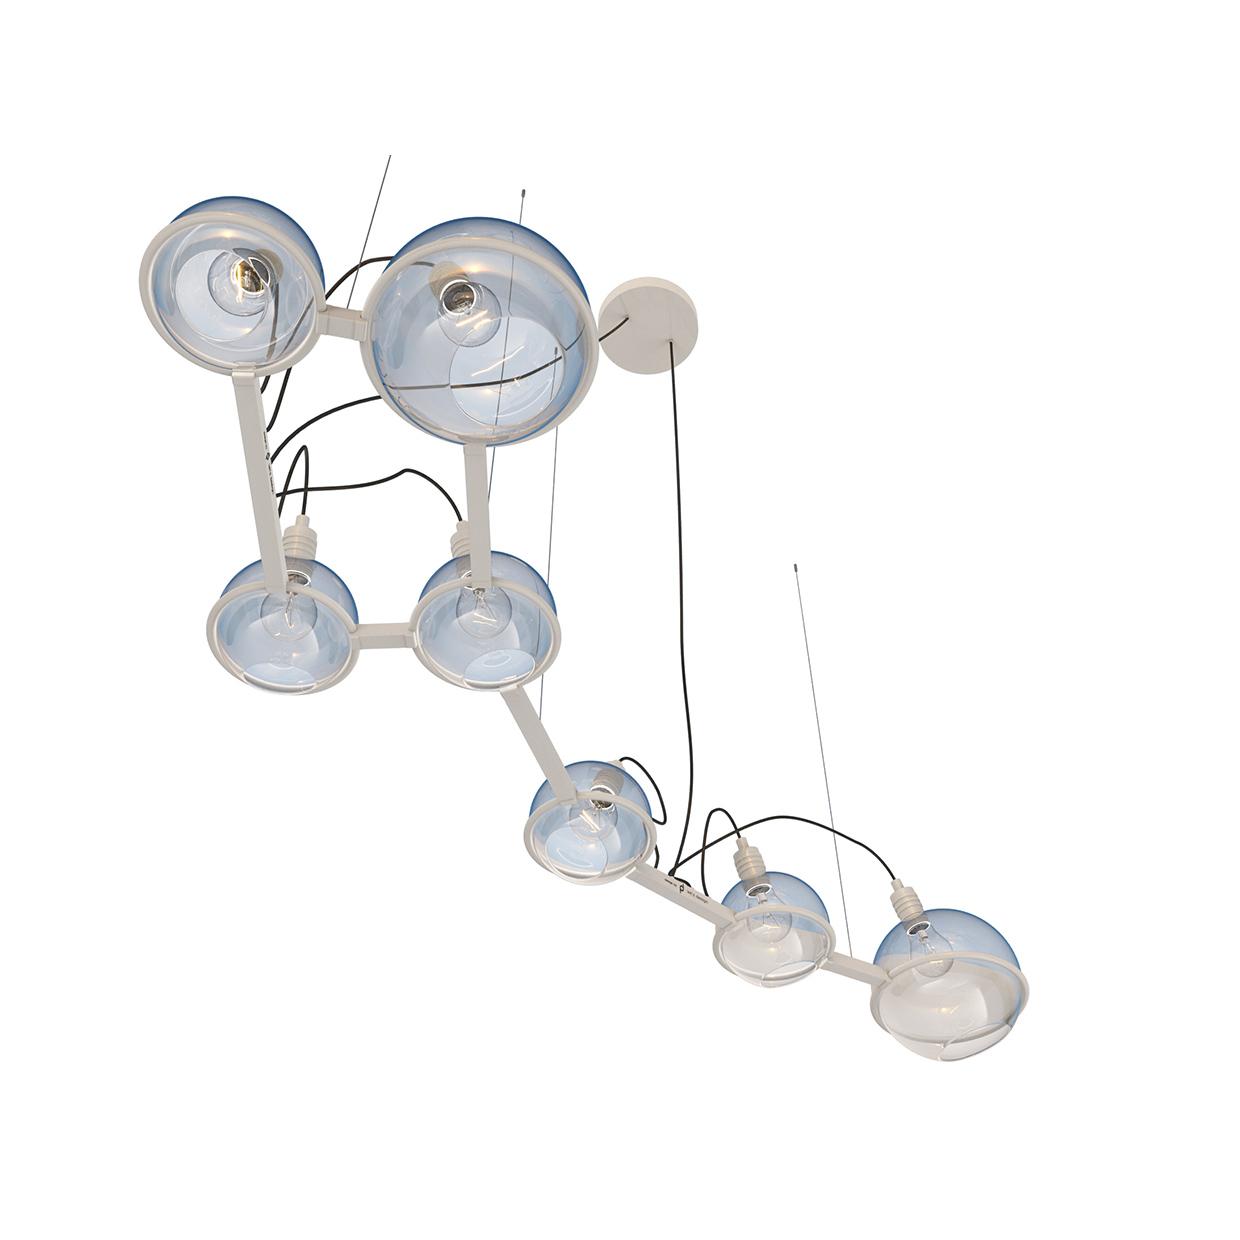 Ursa lamp, SKU. 20916 by Pikartlights 3d model